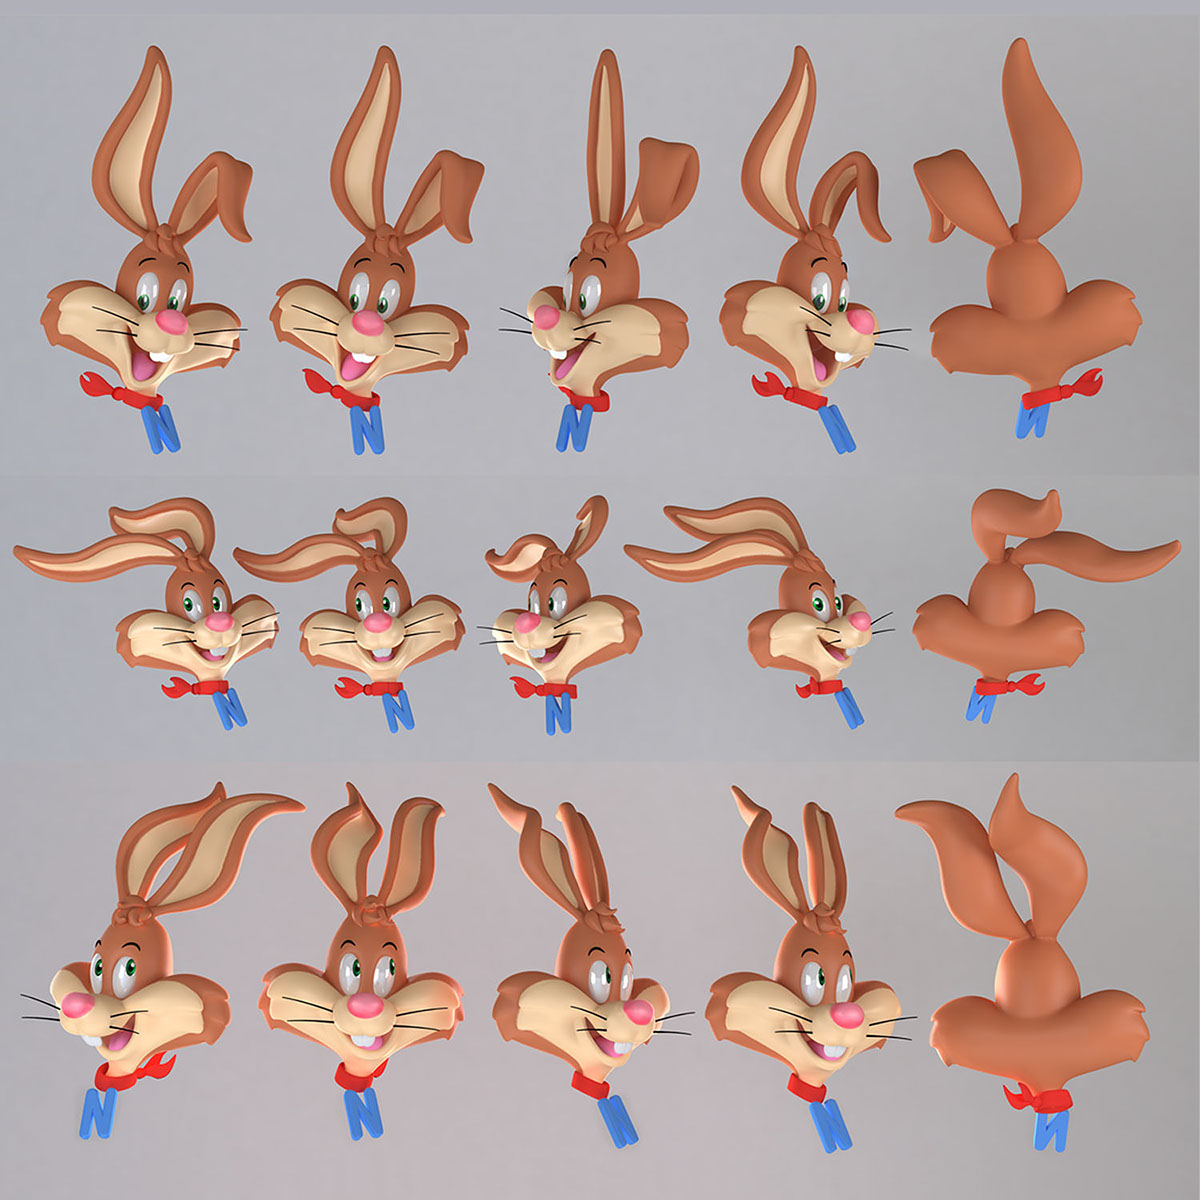 Nestle Quik bunny Mascot brand ambassidor 3D Character 3D illustration